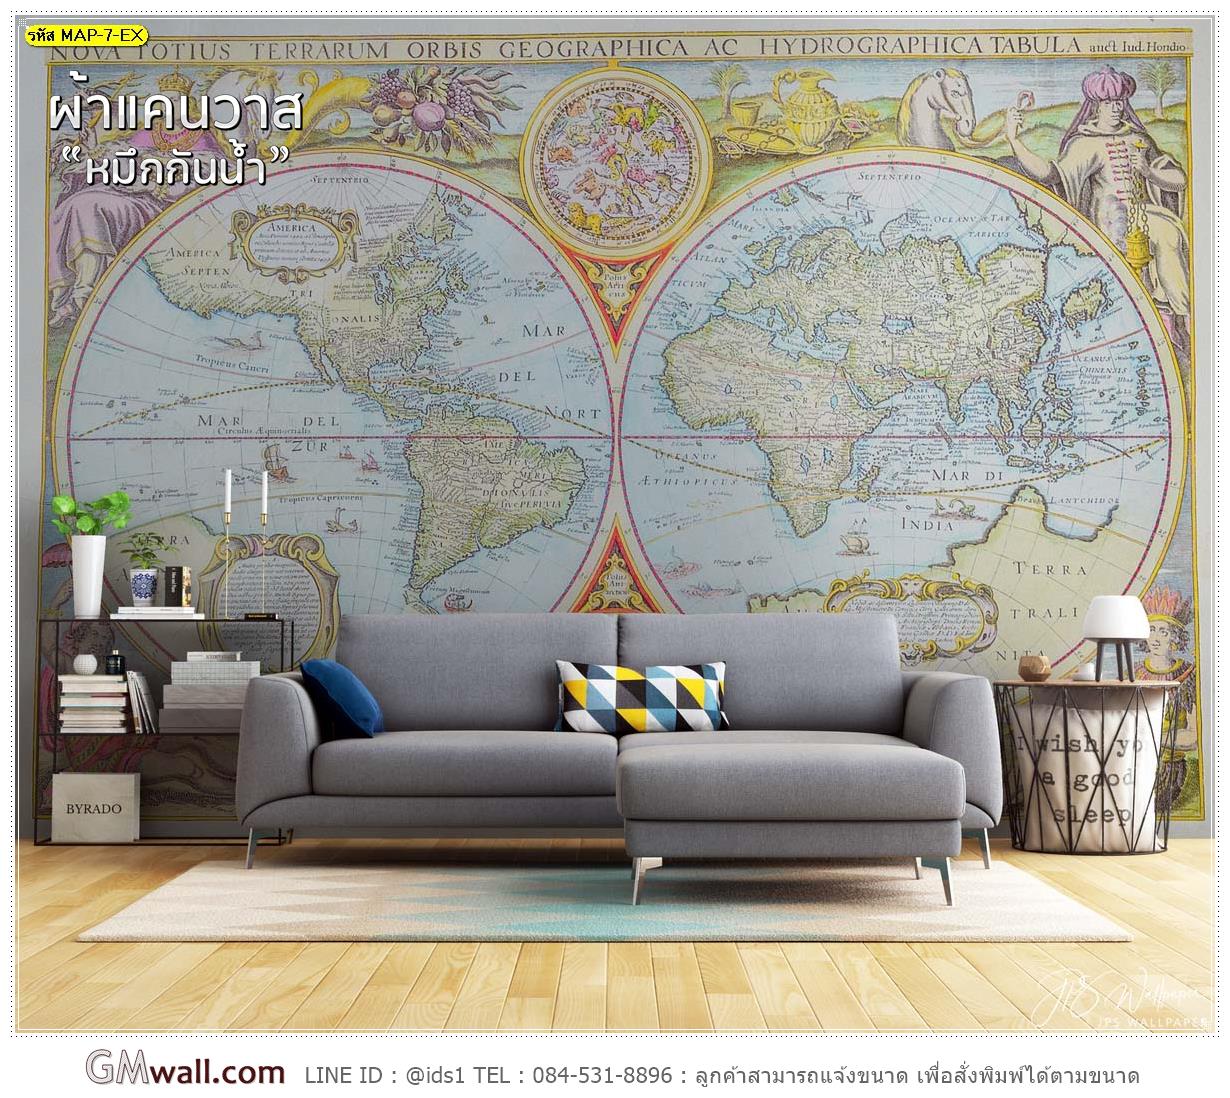 ภาพวอลเปเปอร์ลายแผนที่โลก